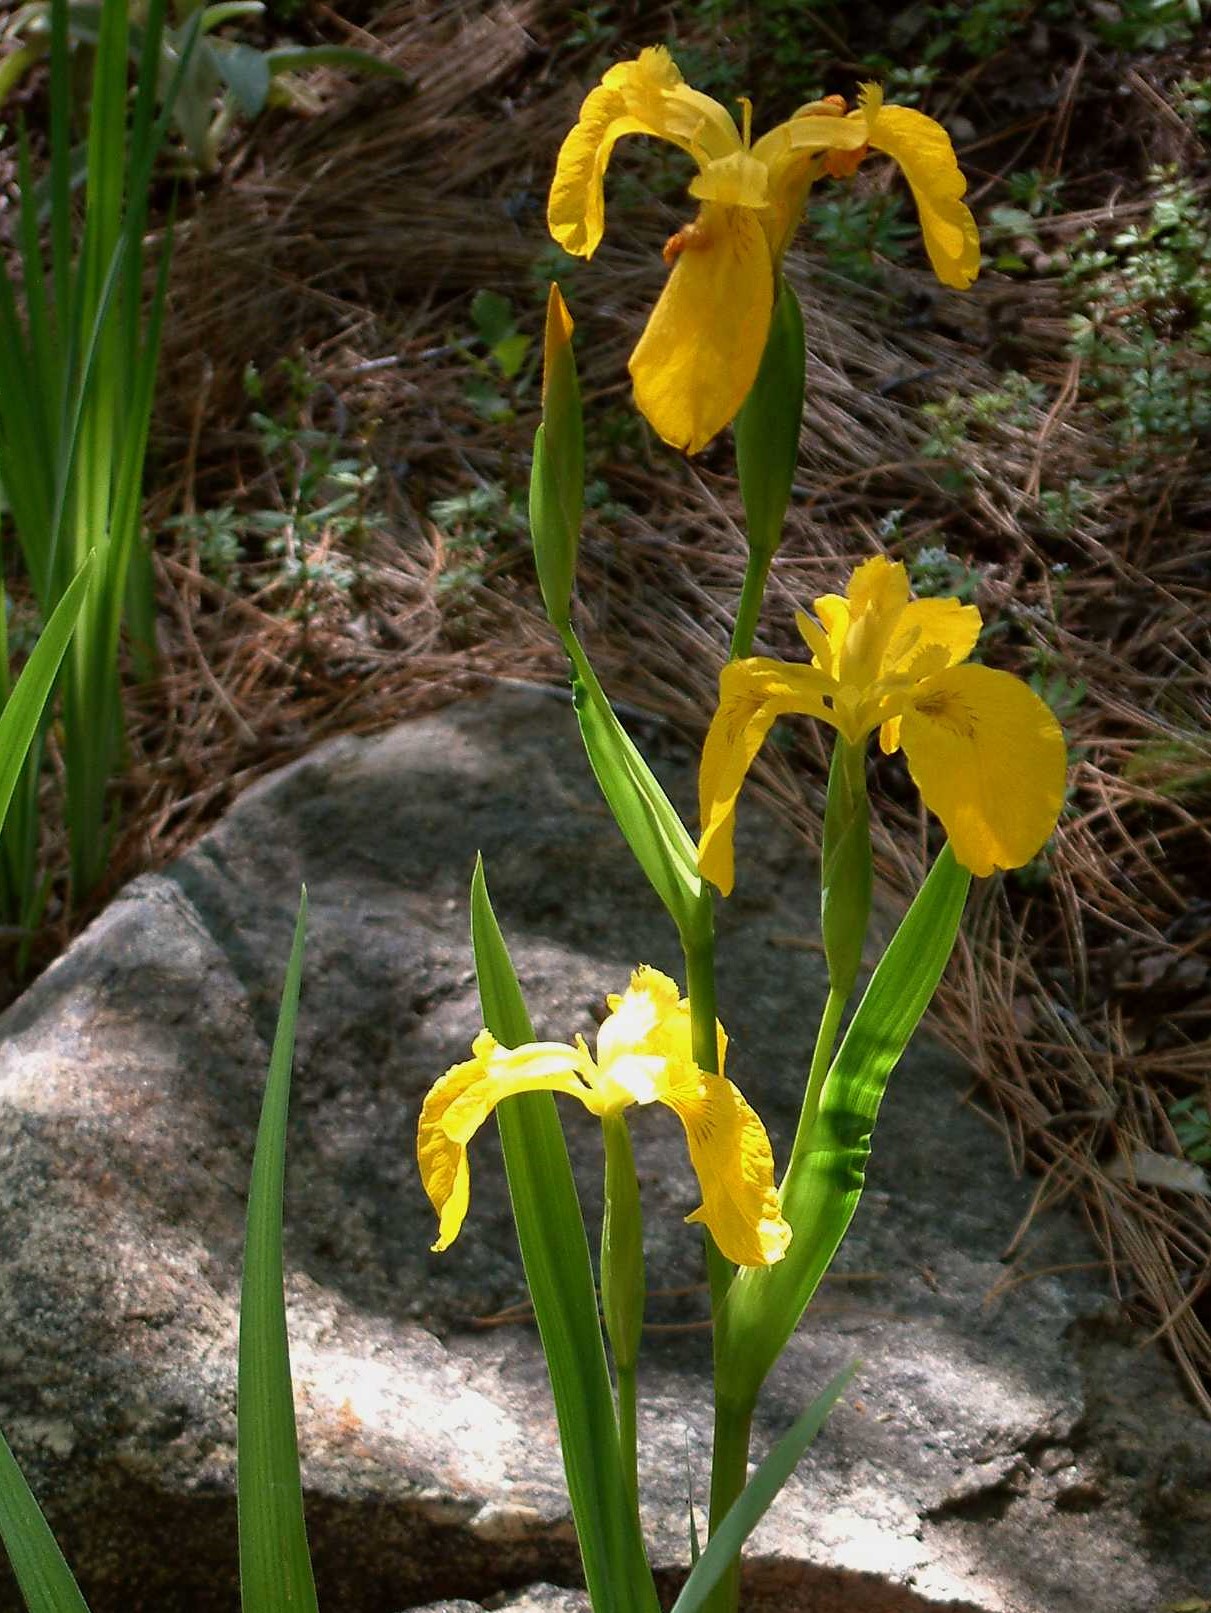 Iris pseudacorus_yellowflag iris flowers_BobCase_cropped